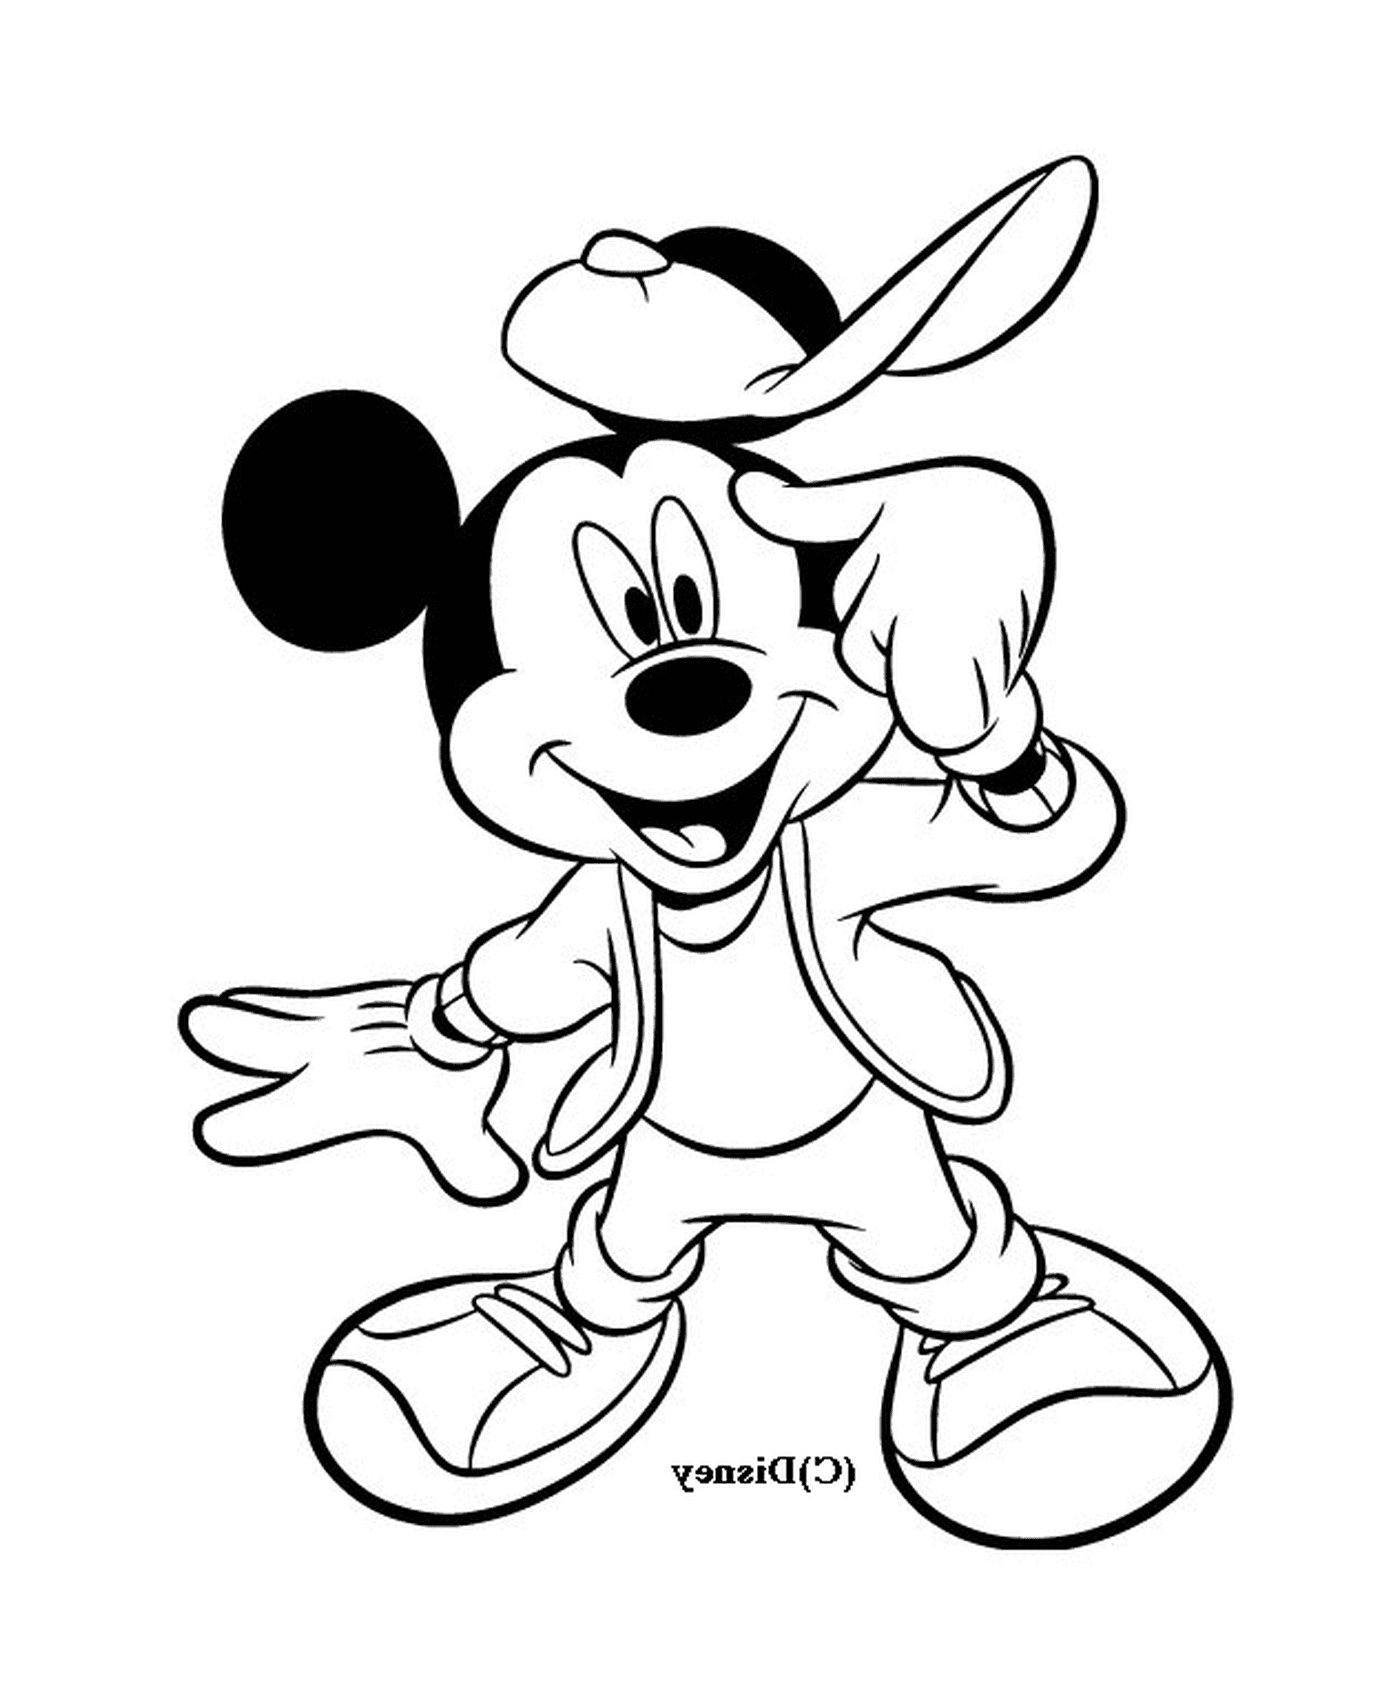  Mickey es genial: llevar una gorra de béisbol y una chaqueta 